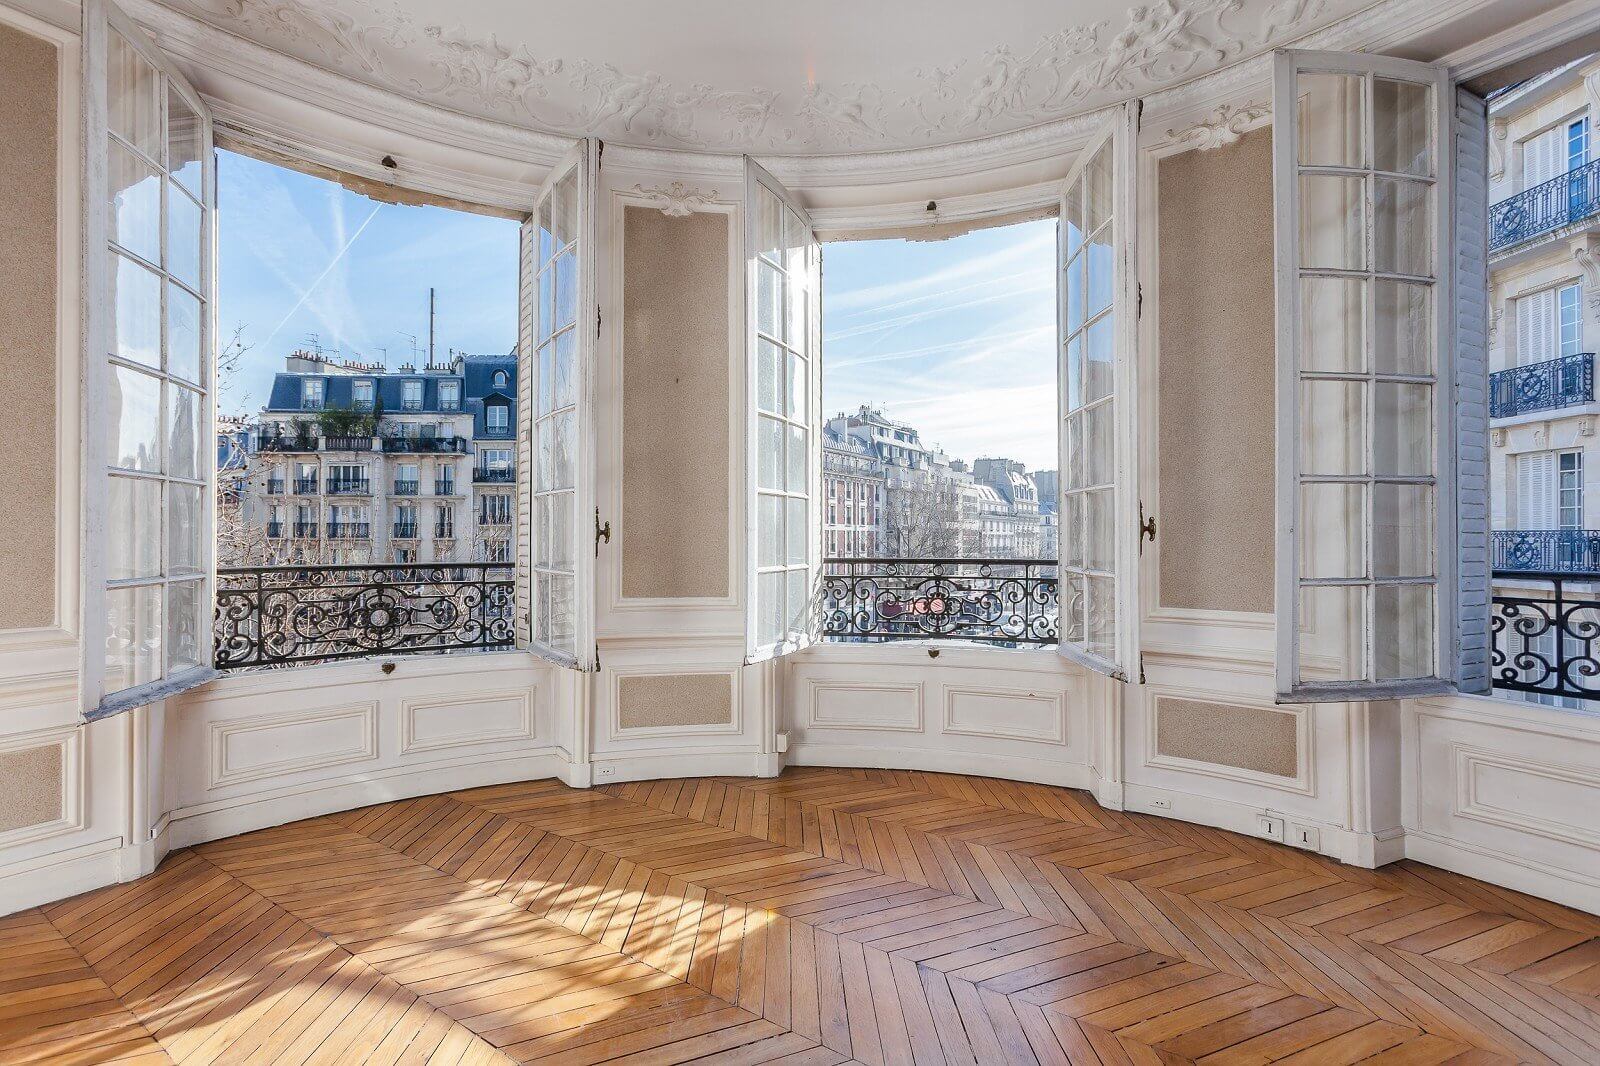 Parisian windows in Haussmann apartments in Paris